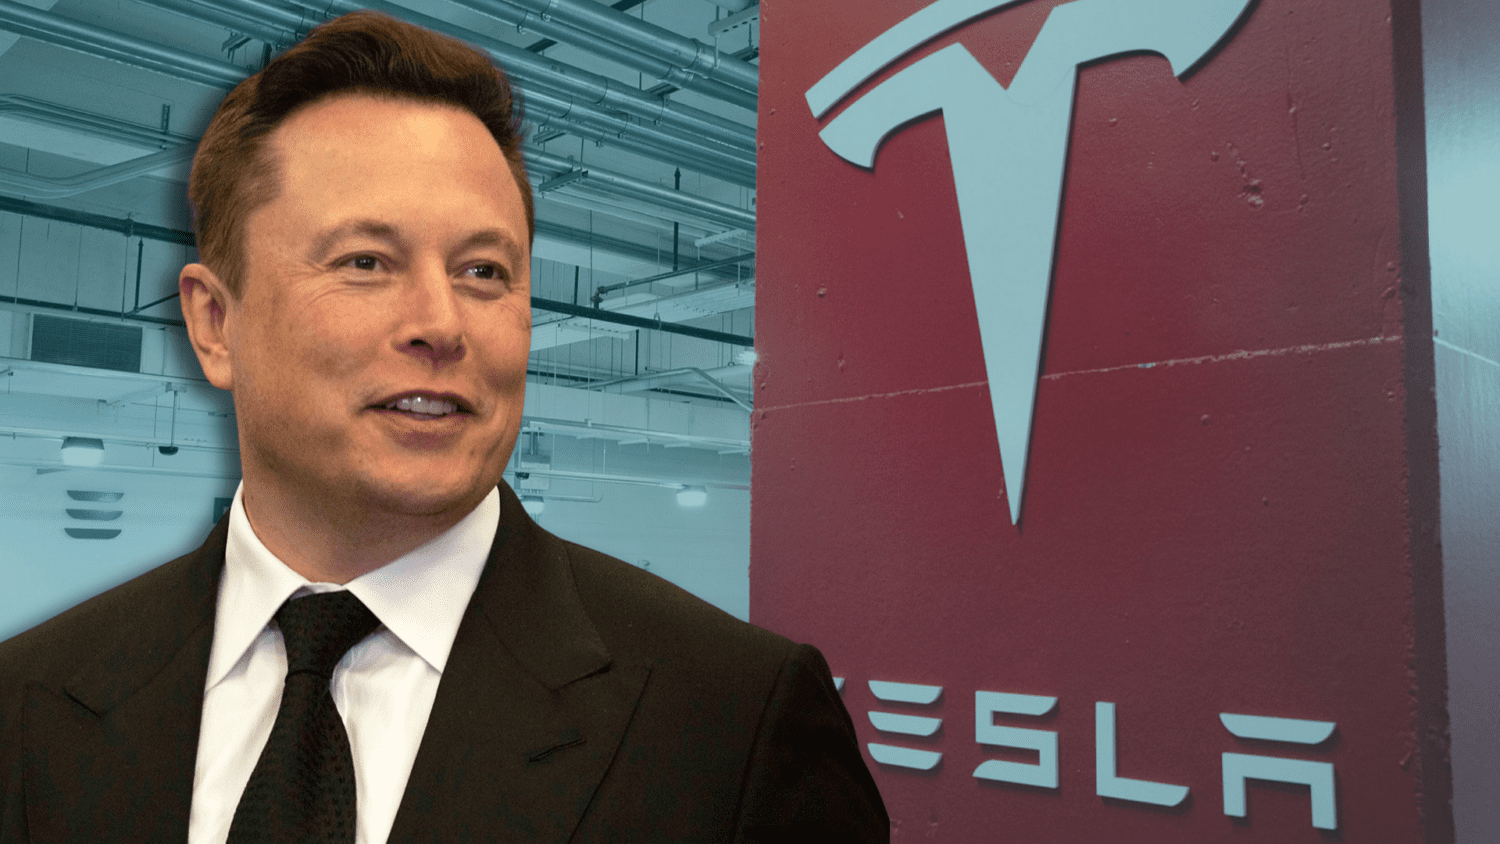 Tesla revenue